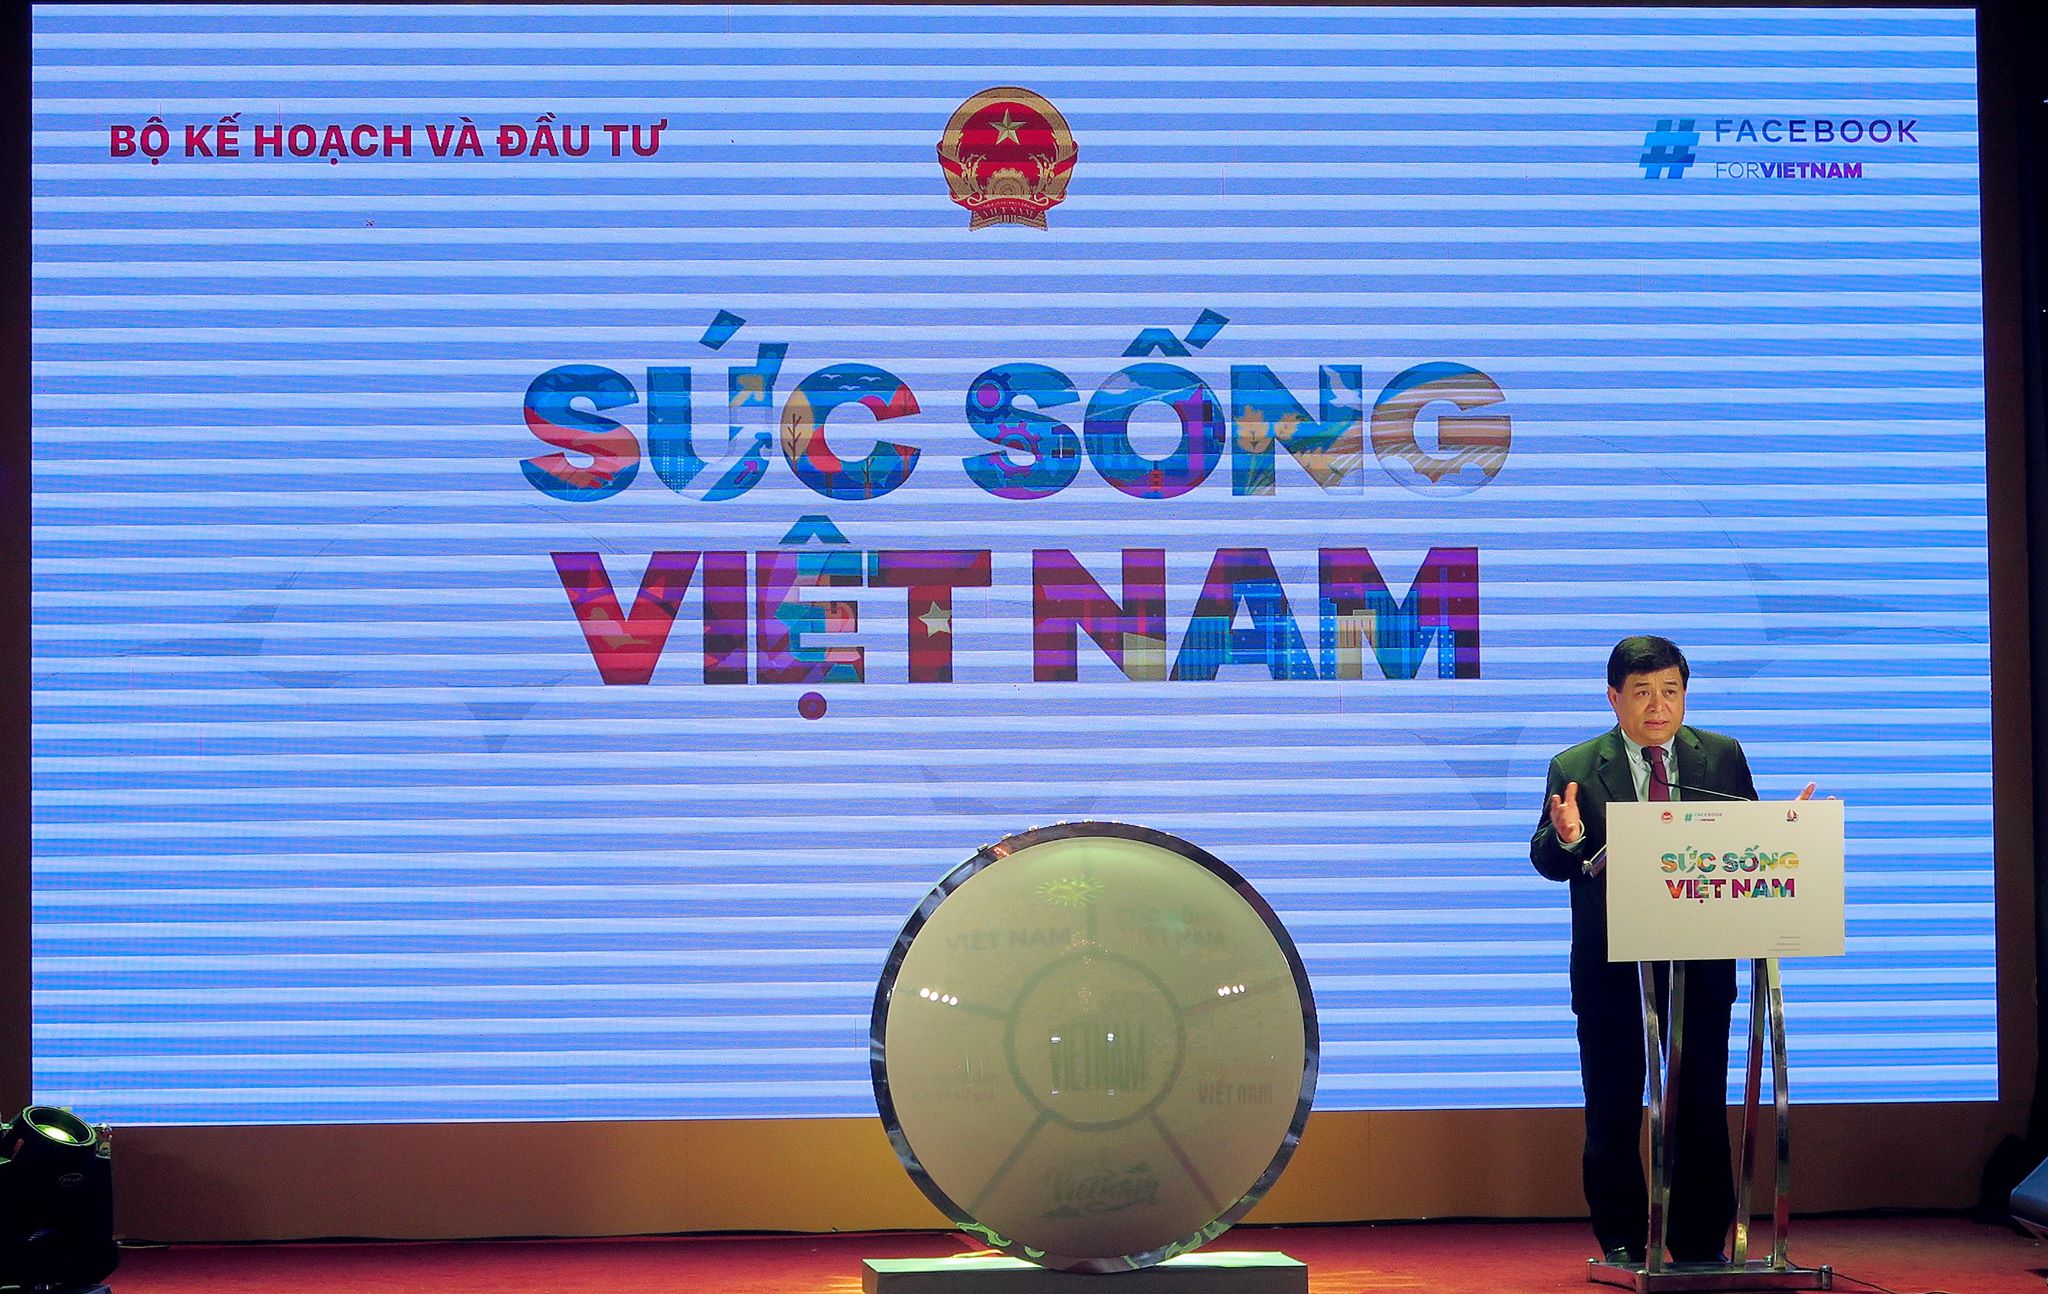 Nằm trong dòng chảy Tự hào Việt Nam do Bộ trưởng Bộ Kế hoạch và Đầu tư phát động từ cuối năm 2019, chương trình Sức sống Việt Nam tiếp tục các nỗ lực nhằm hỗ trợ doanh nghiệp và cộng đồng vượt qua khó khăn, phục hồi và phát triển trong và sau COVID-19